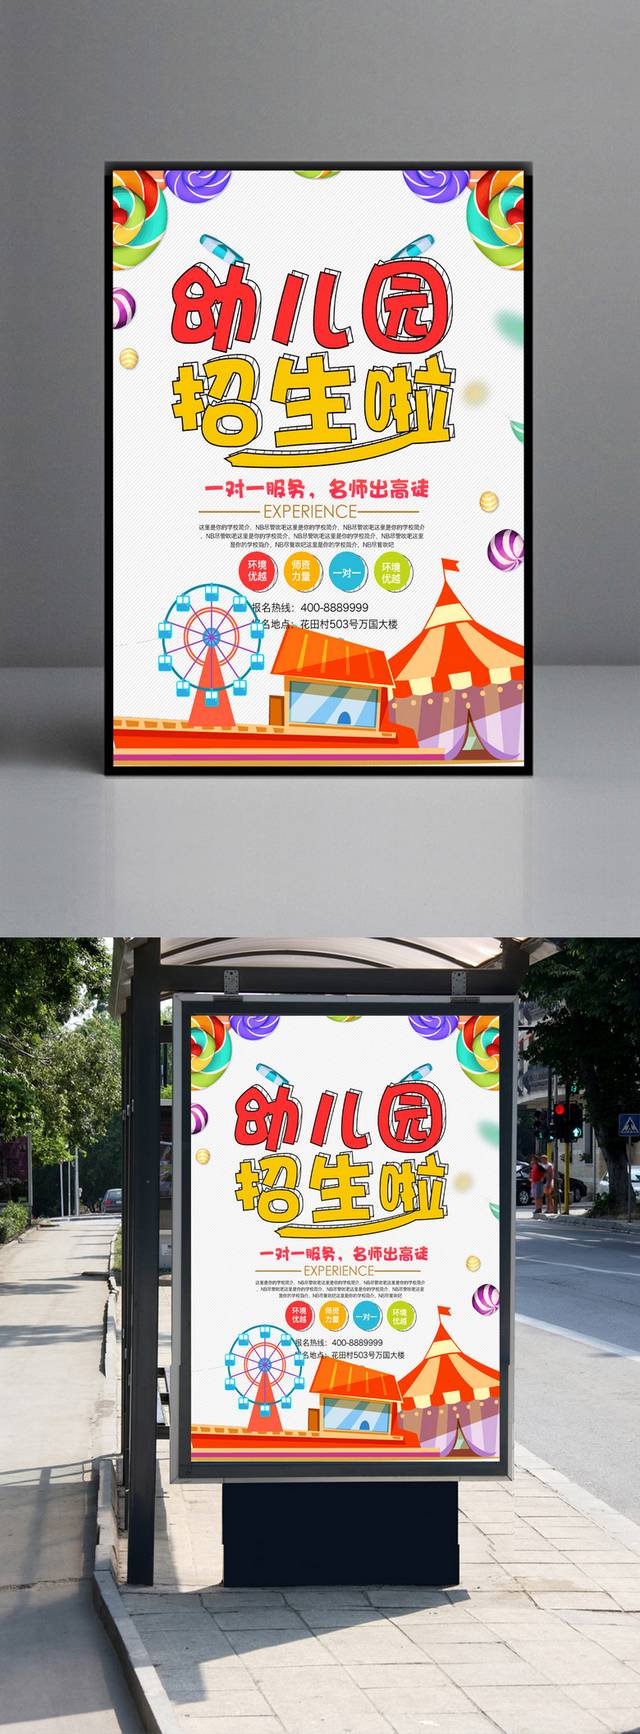 清新简约幼儿园招生海报设计